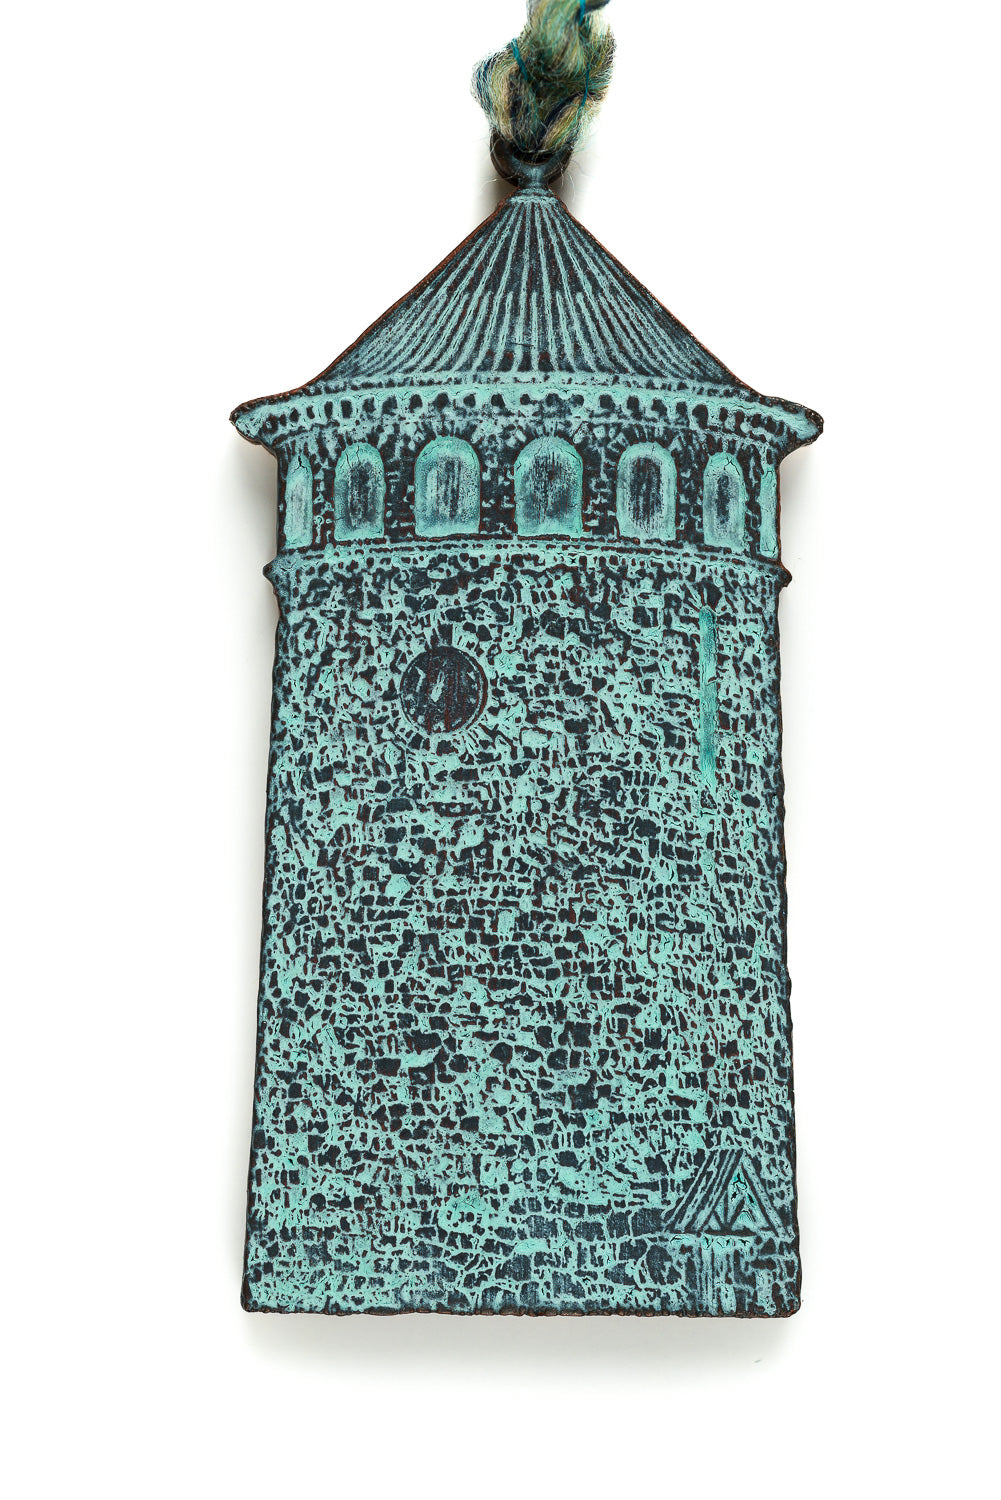 Rockford Tower artwork